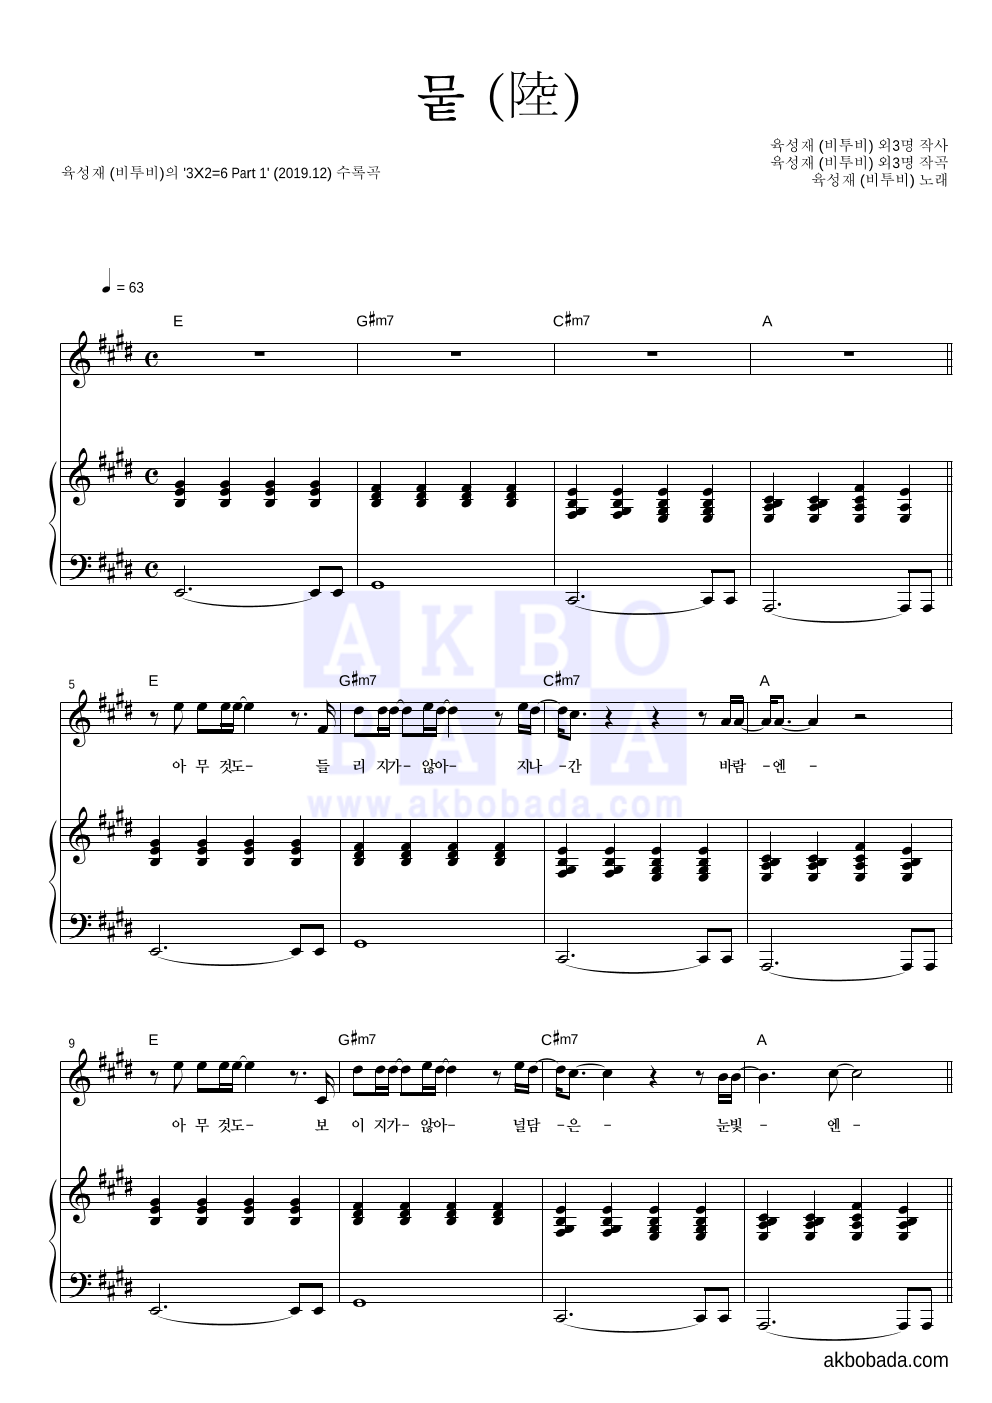 육성재 - 뭍 (陸) 피아노 3단 악보 